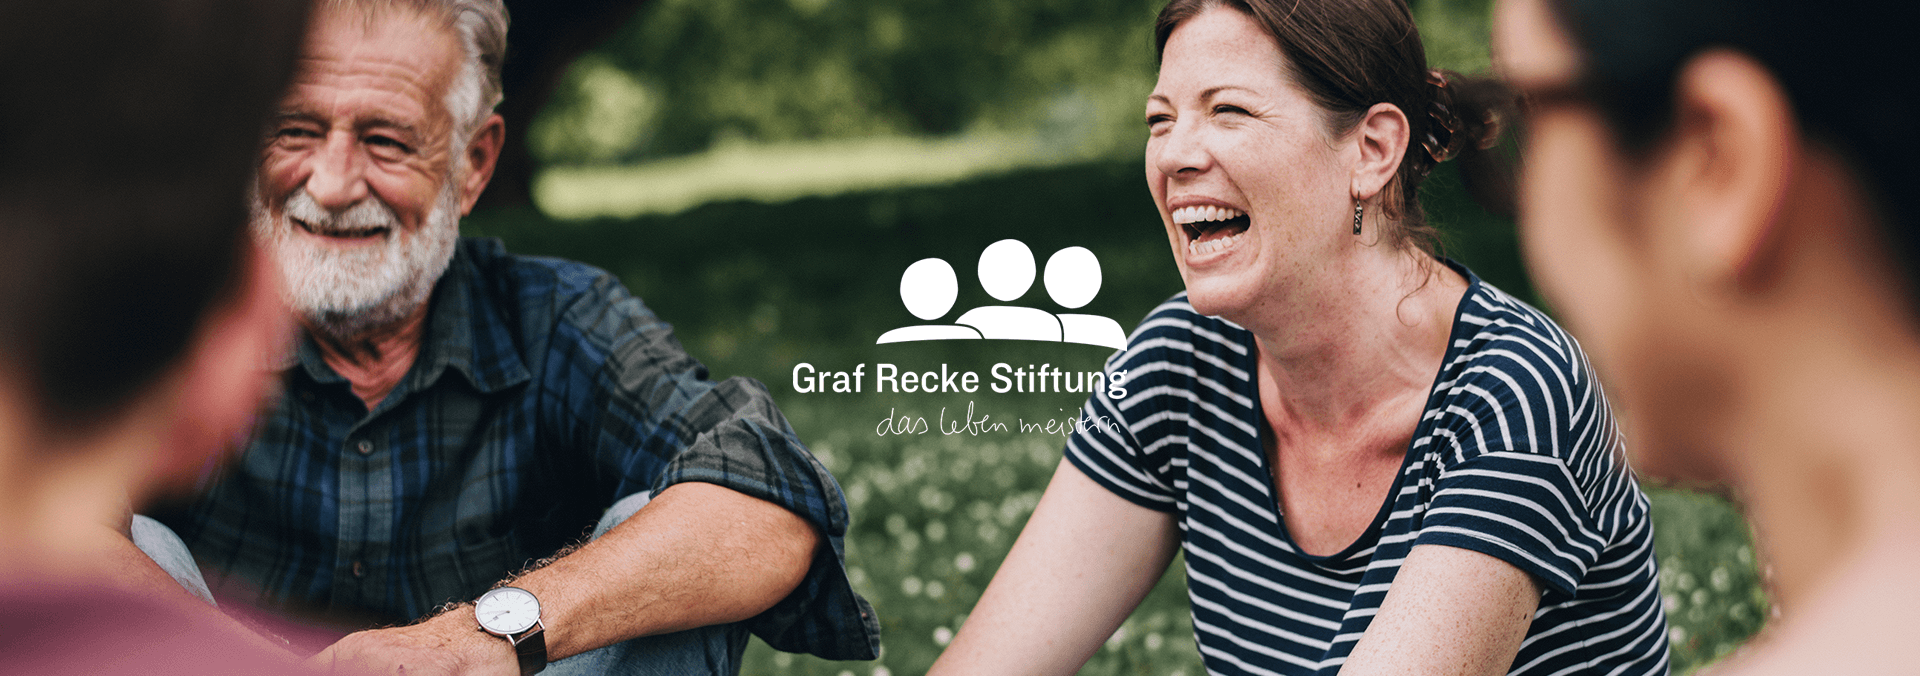 Graf Recke Stiftung Header